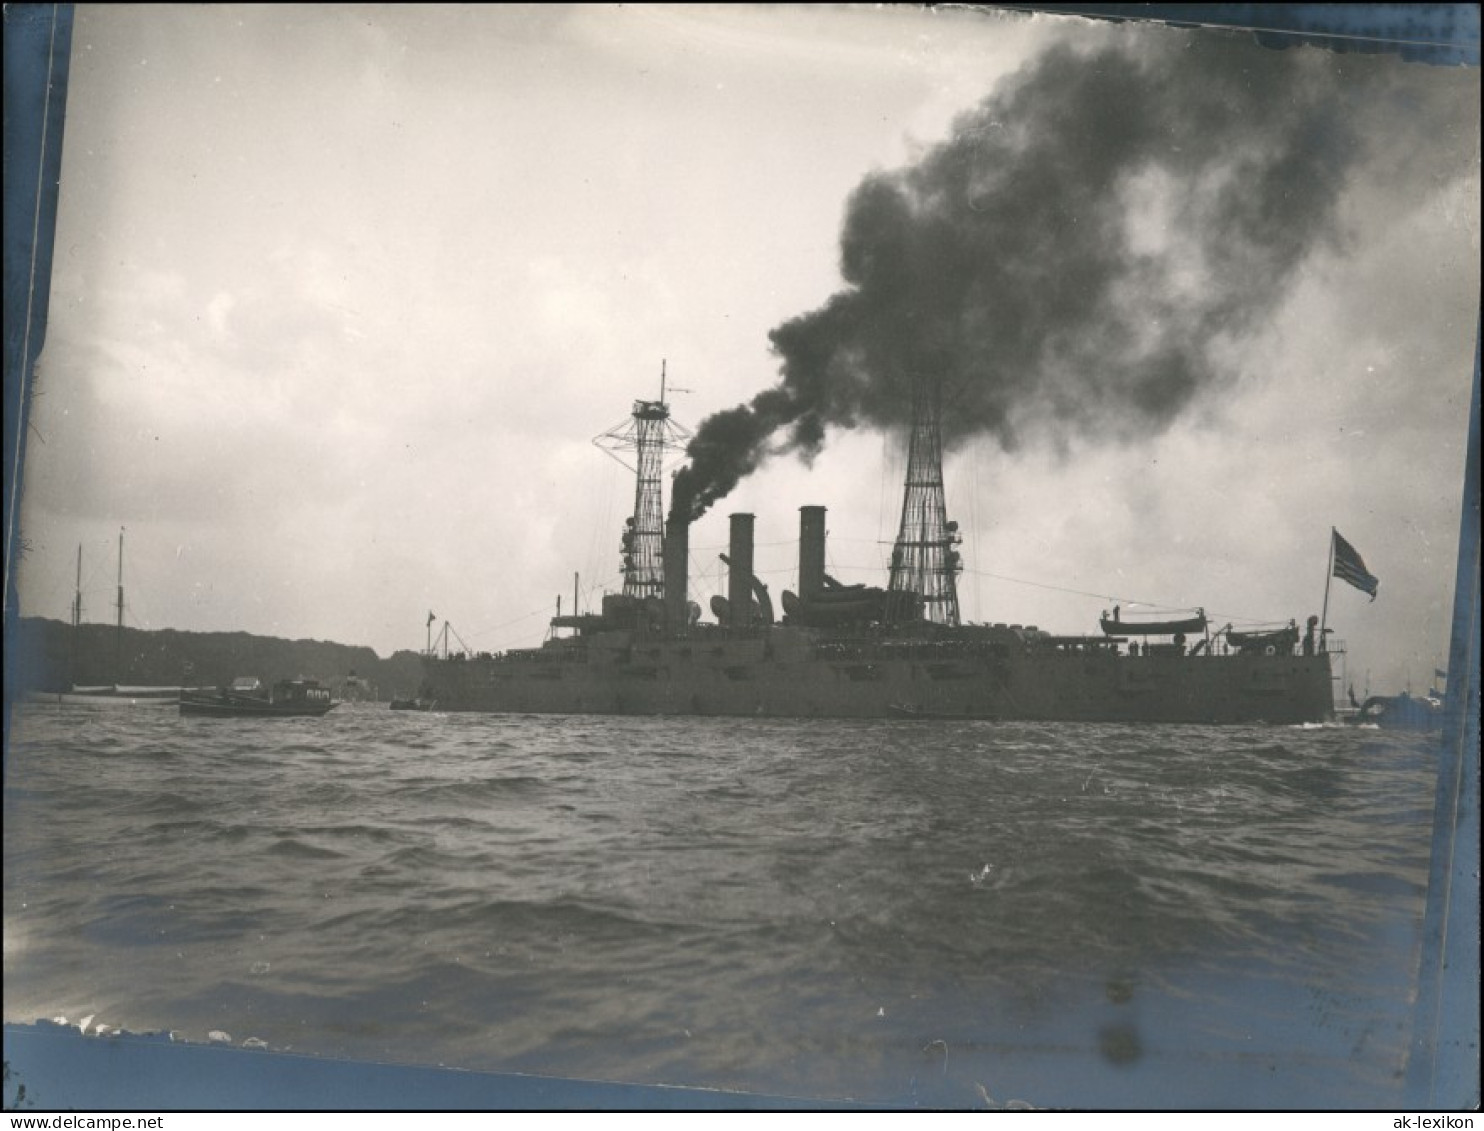 Schiffe/Schifffahrt - Kriegsschiffe (Marine) Im Hafen 1914 Privatfoto - Warships